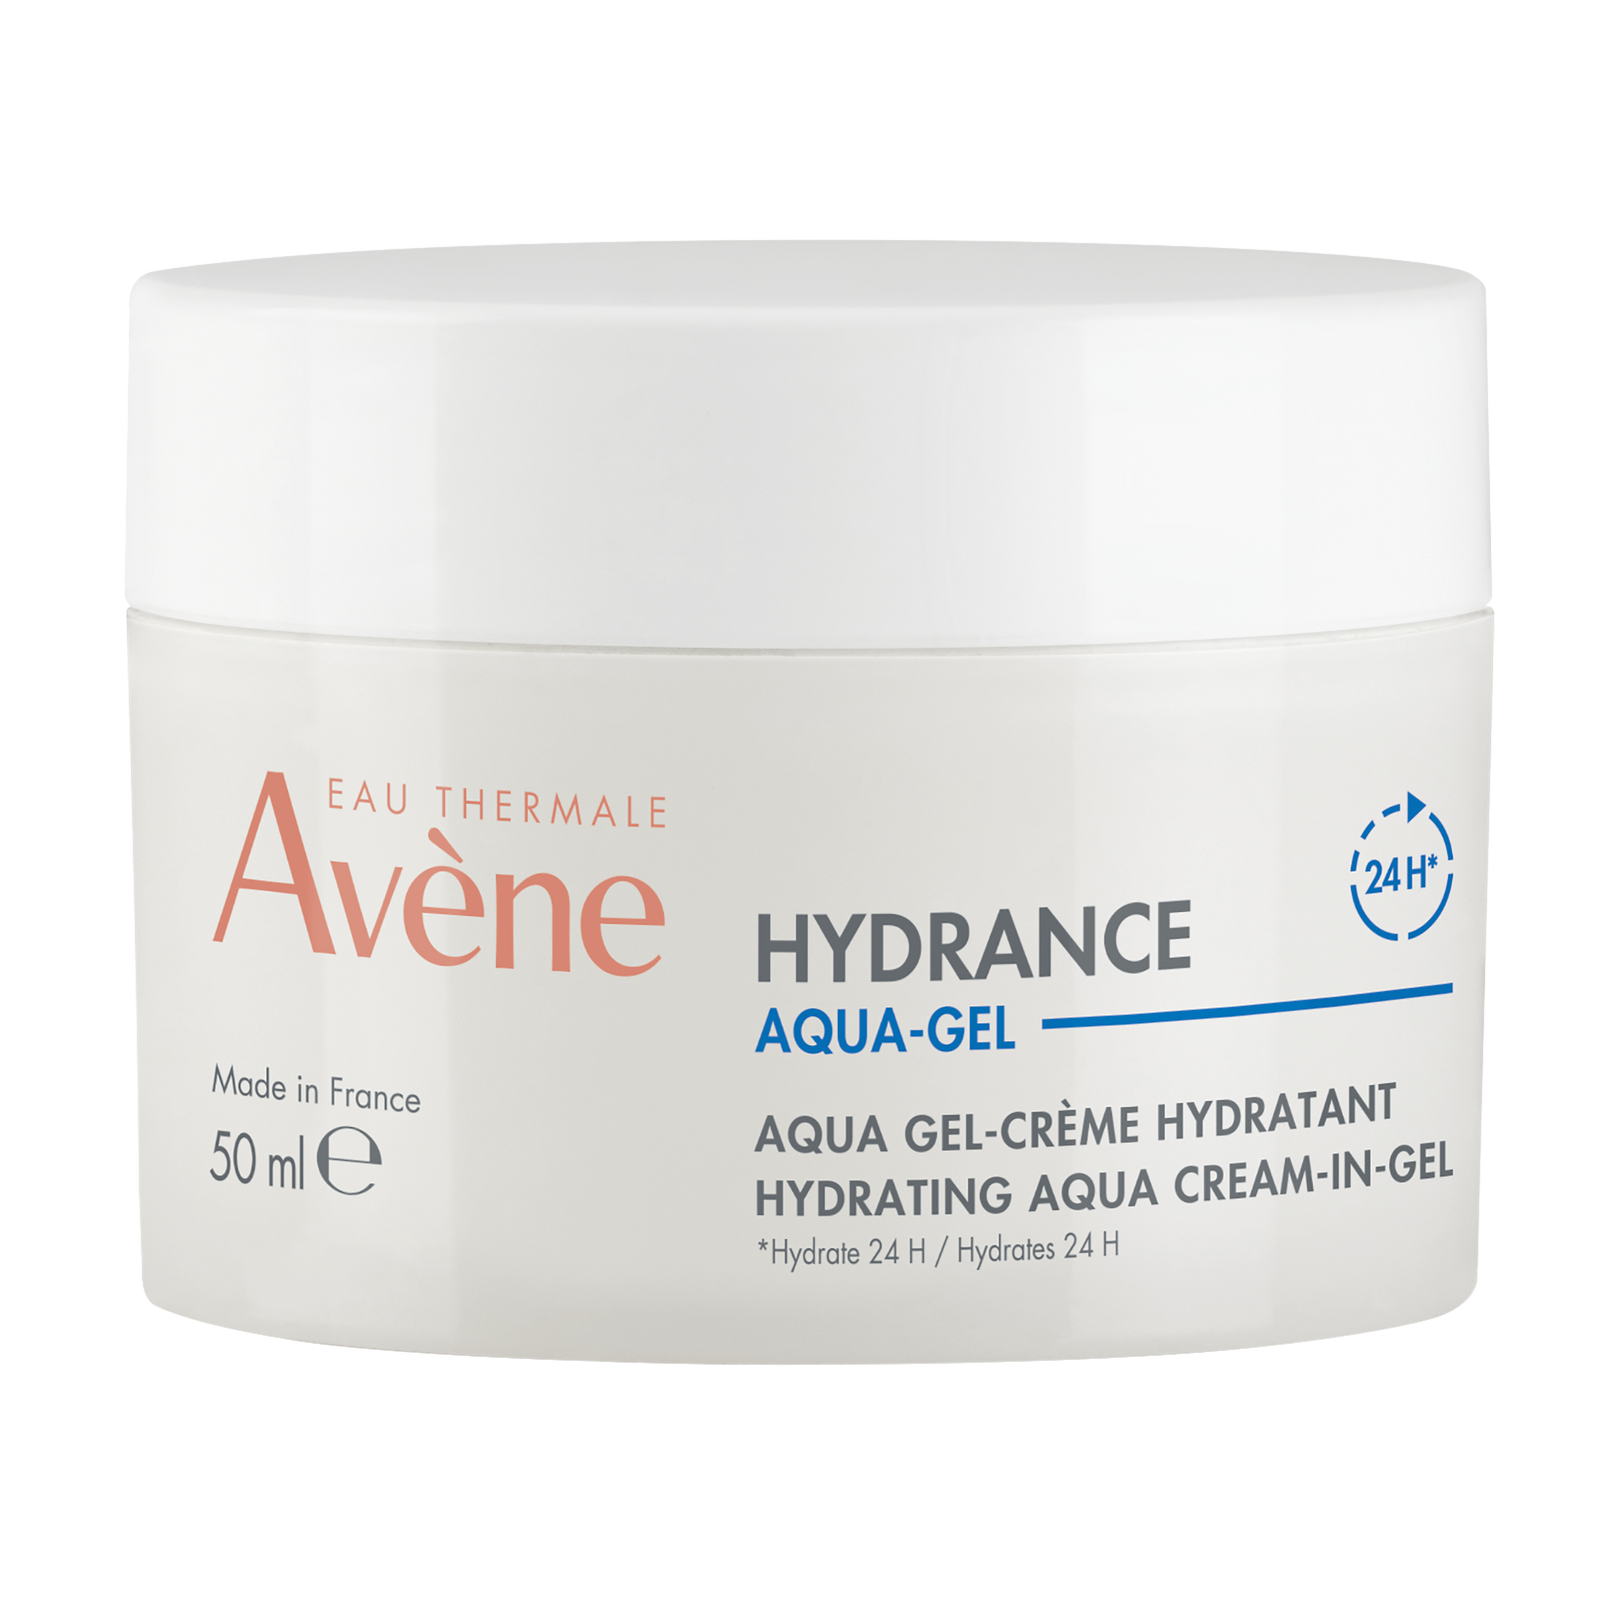 Hydrance Aqua Cream-in-Gel